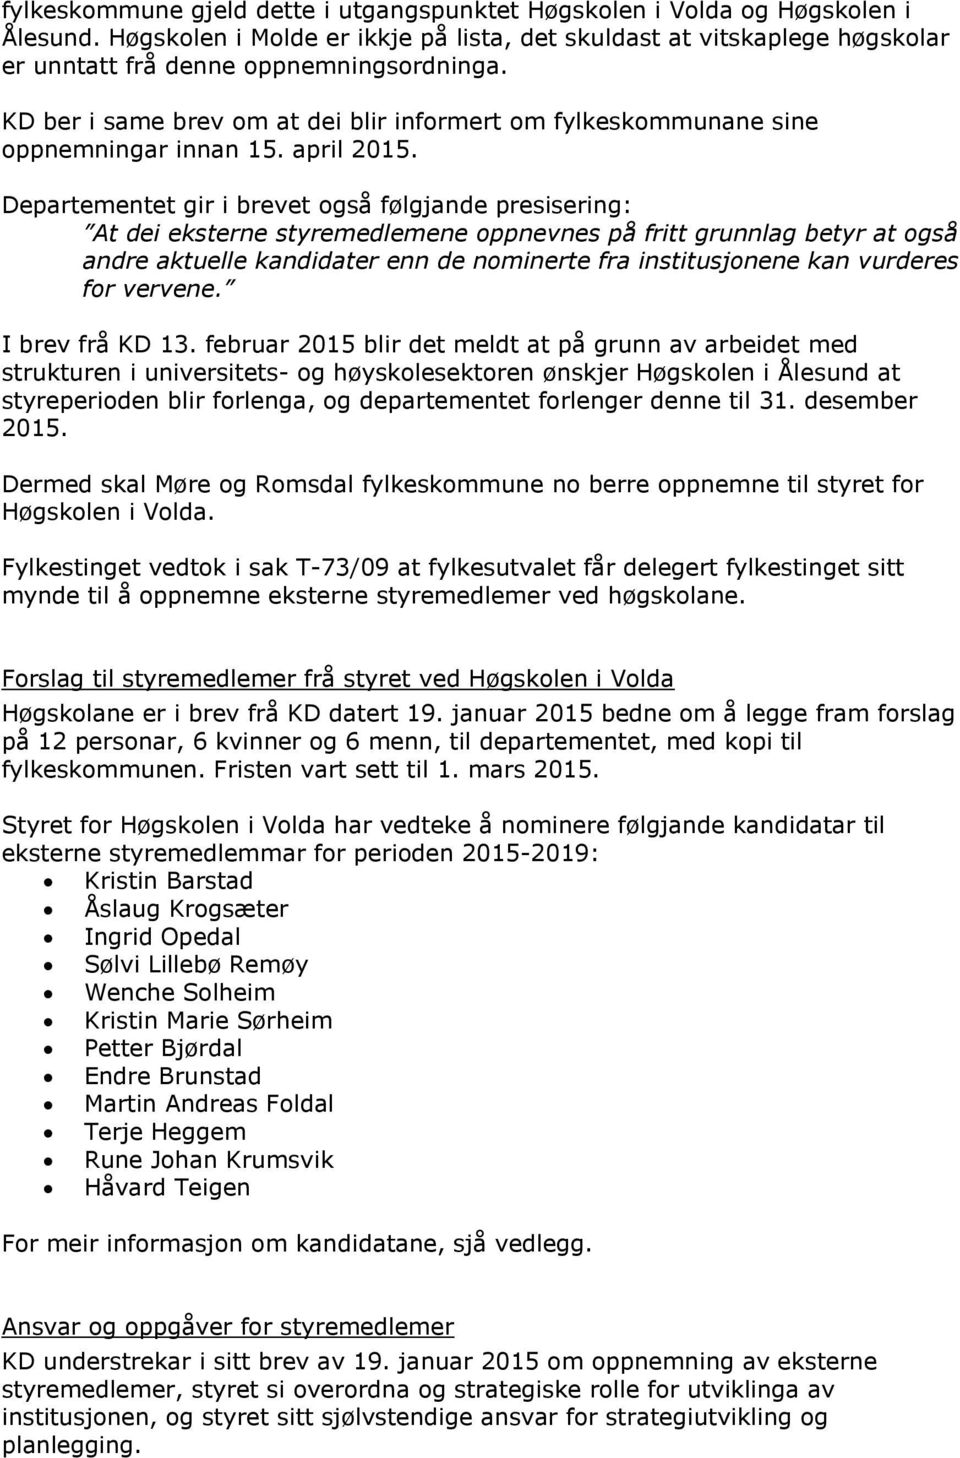 KD ber i same brev om at dei blir informert om fylkeskommunane sine oppnemningar innan 15. april 2015.